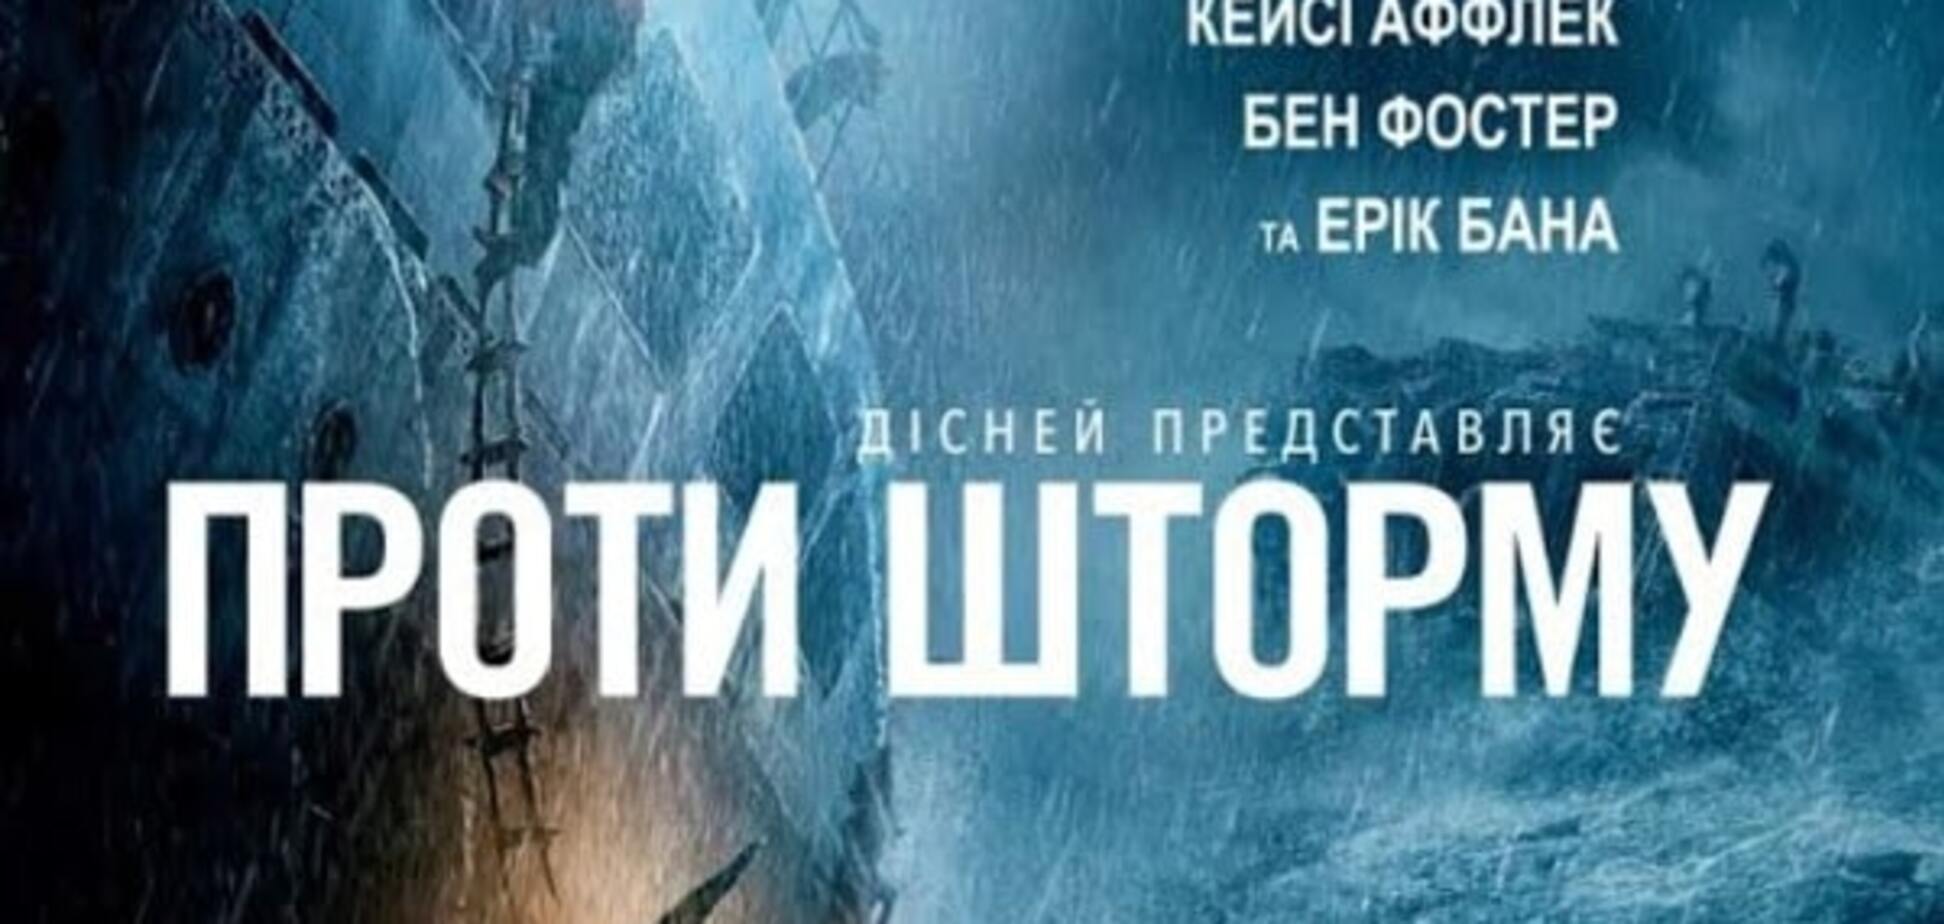 'Против шторма': украинцам покажут фильм о противостоянии человека и стихии